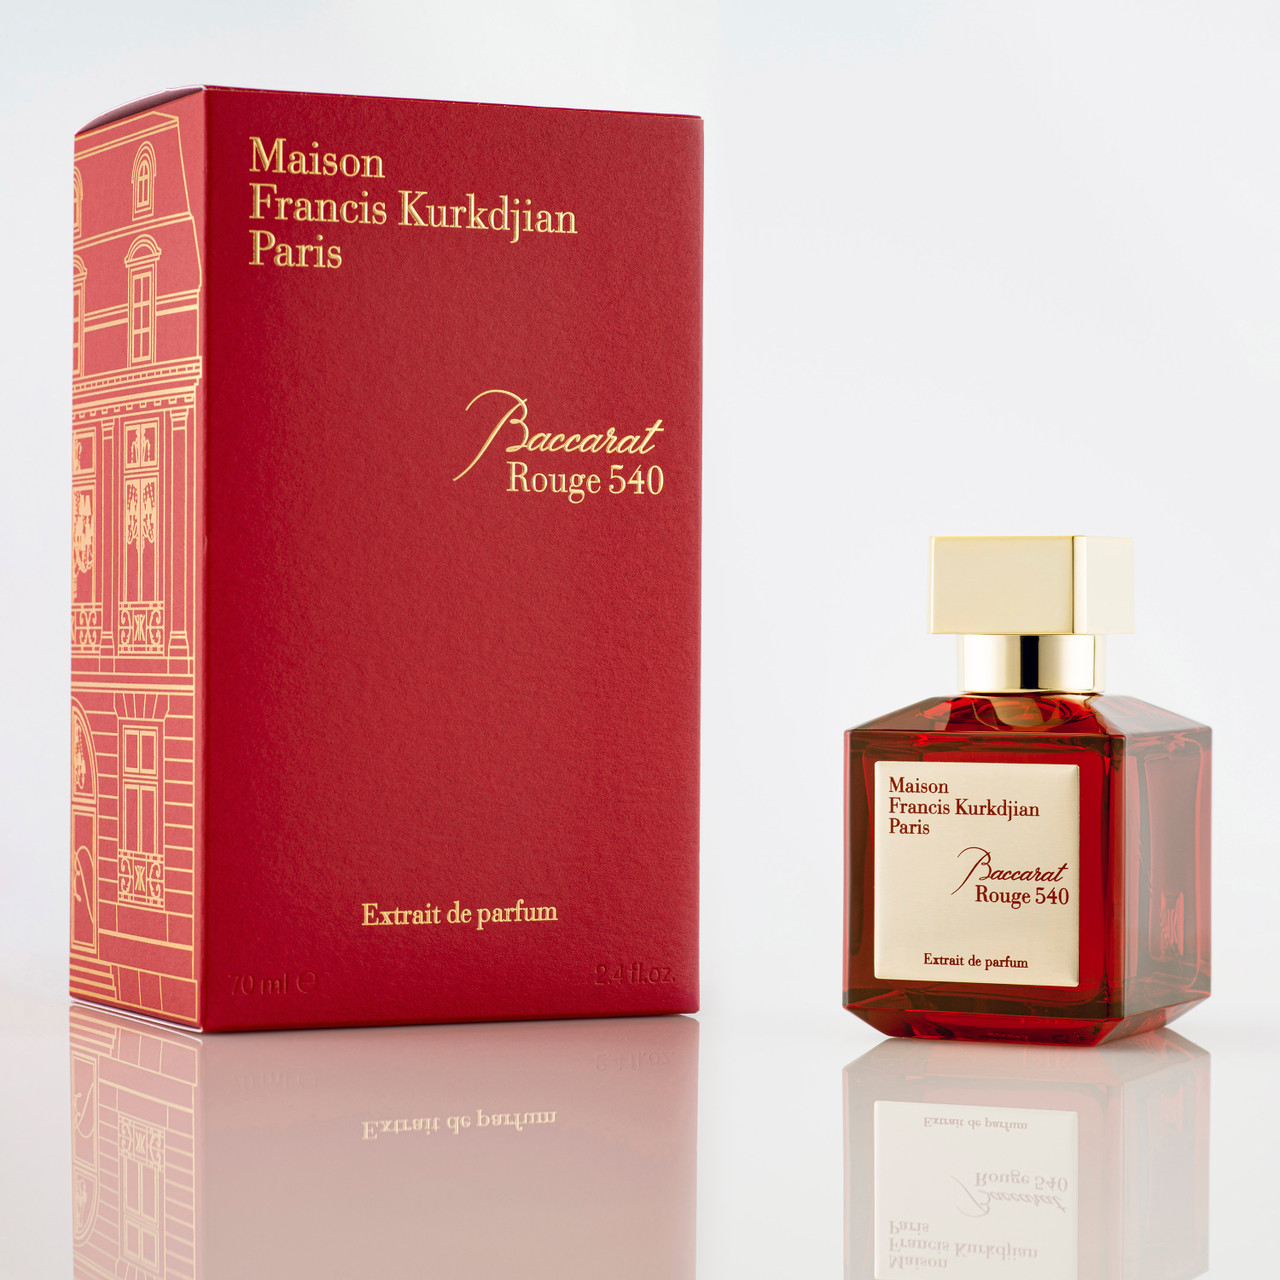 Baccarat Rouge 540 by Maison Francis Kurkdjian Extrait de Parfum 2.4oz New